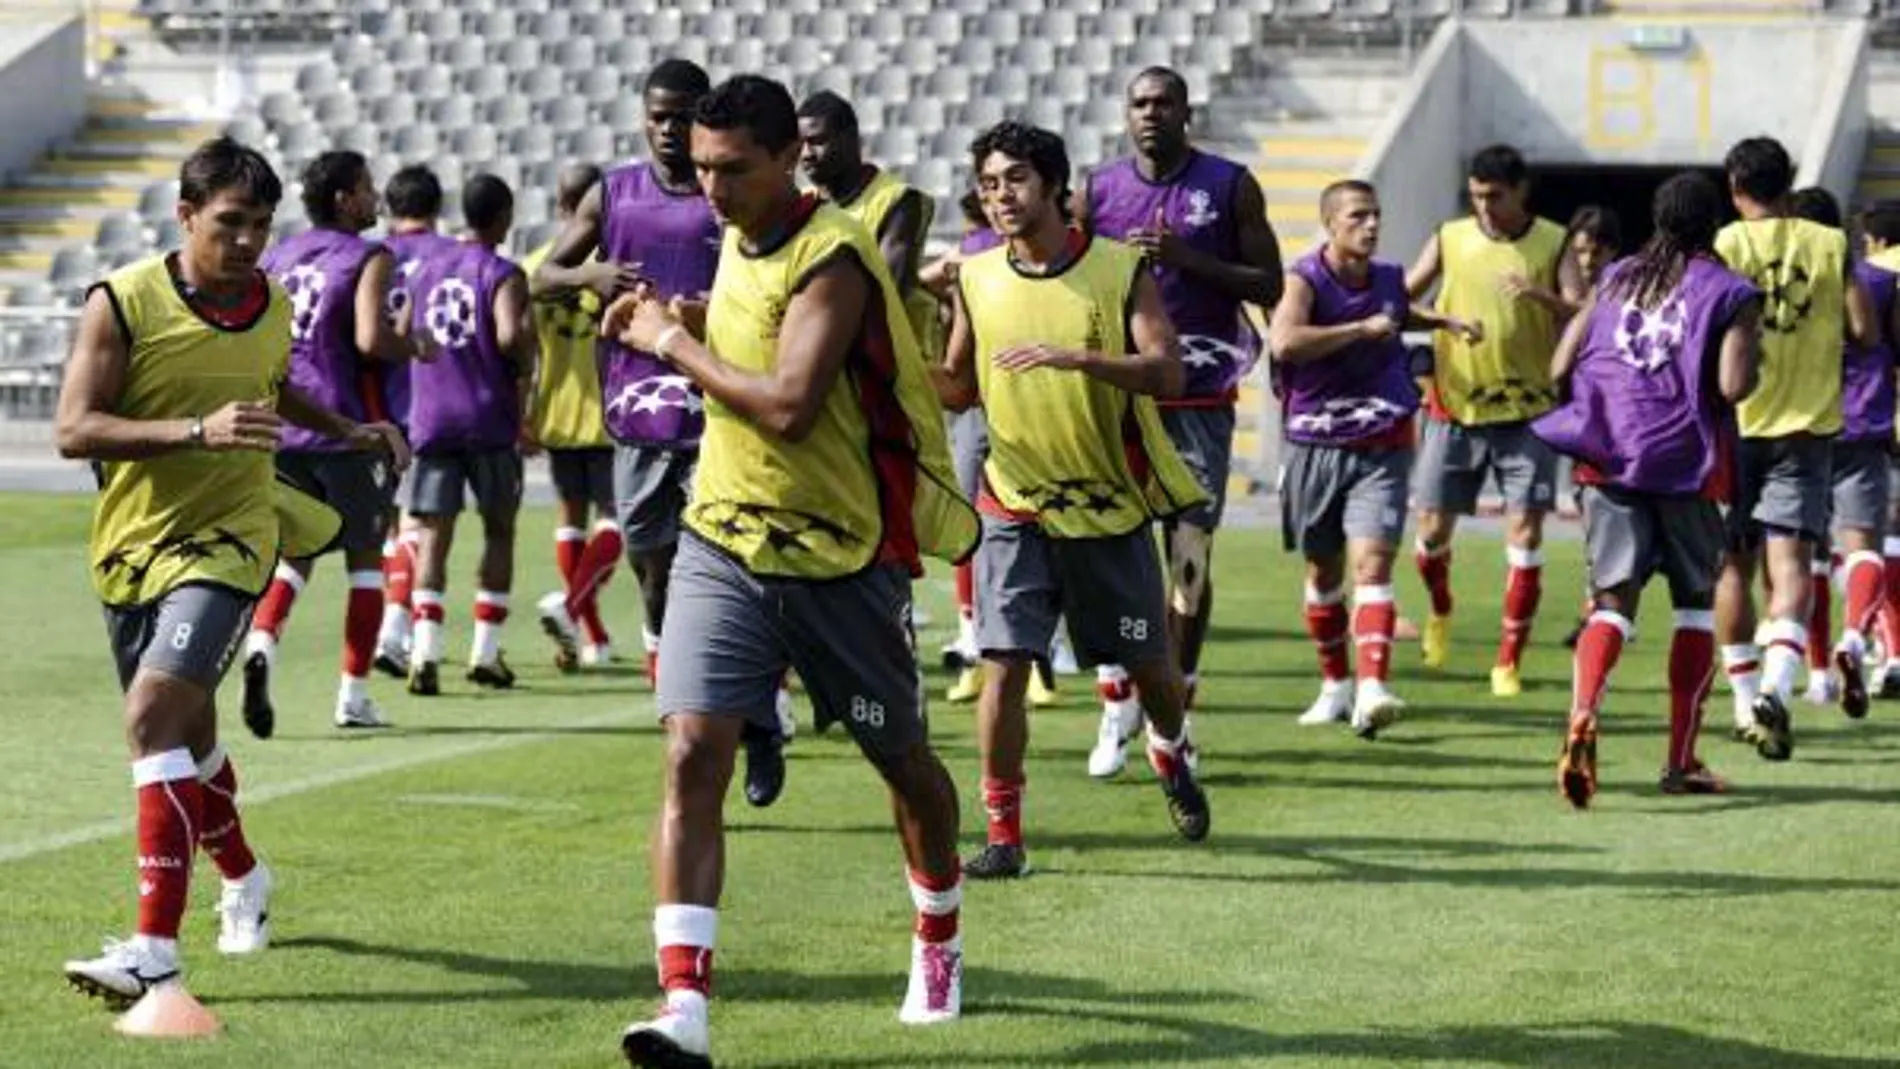 Los jugadores del Sporting de Braga se ejercitan durante el entrenamiento realizado en el estadio AXA de Braga, Portugual